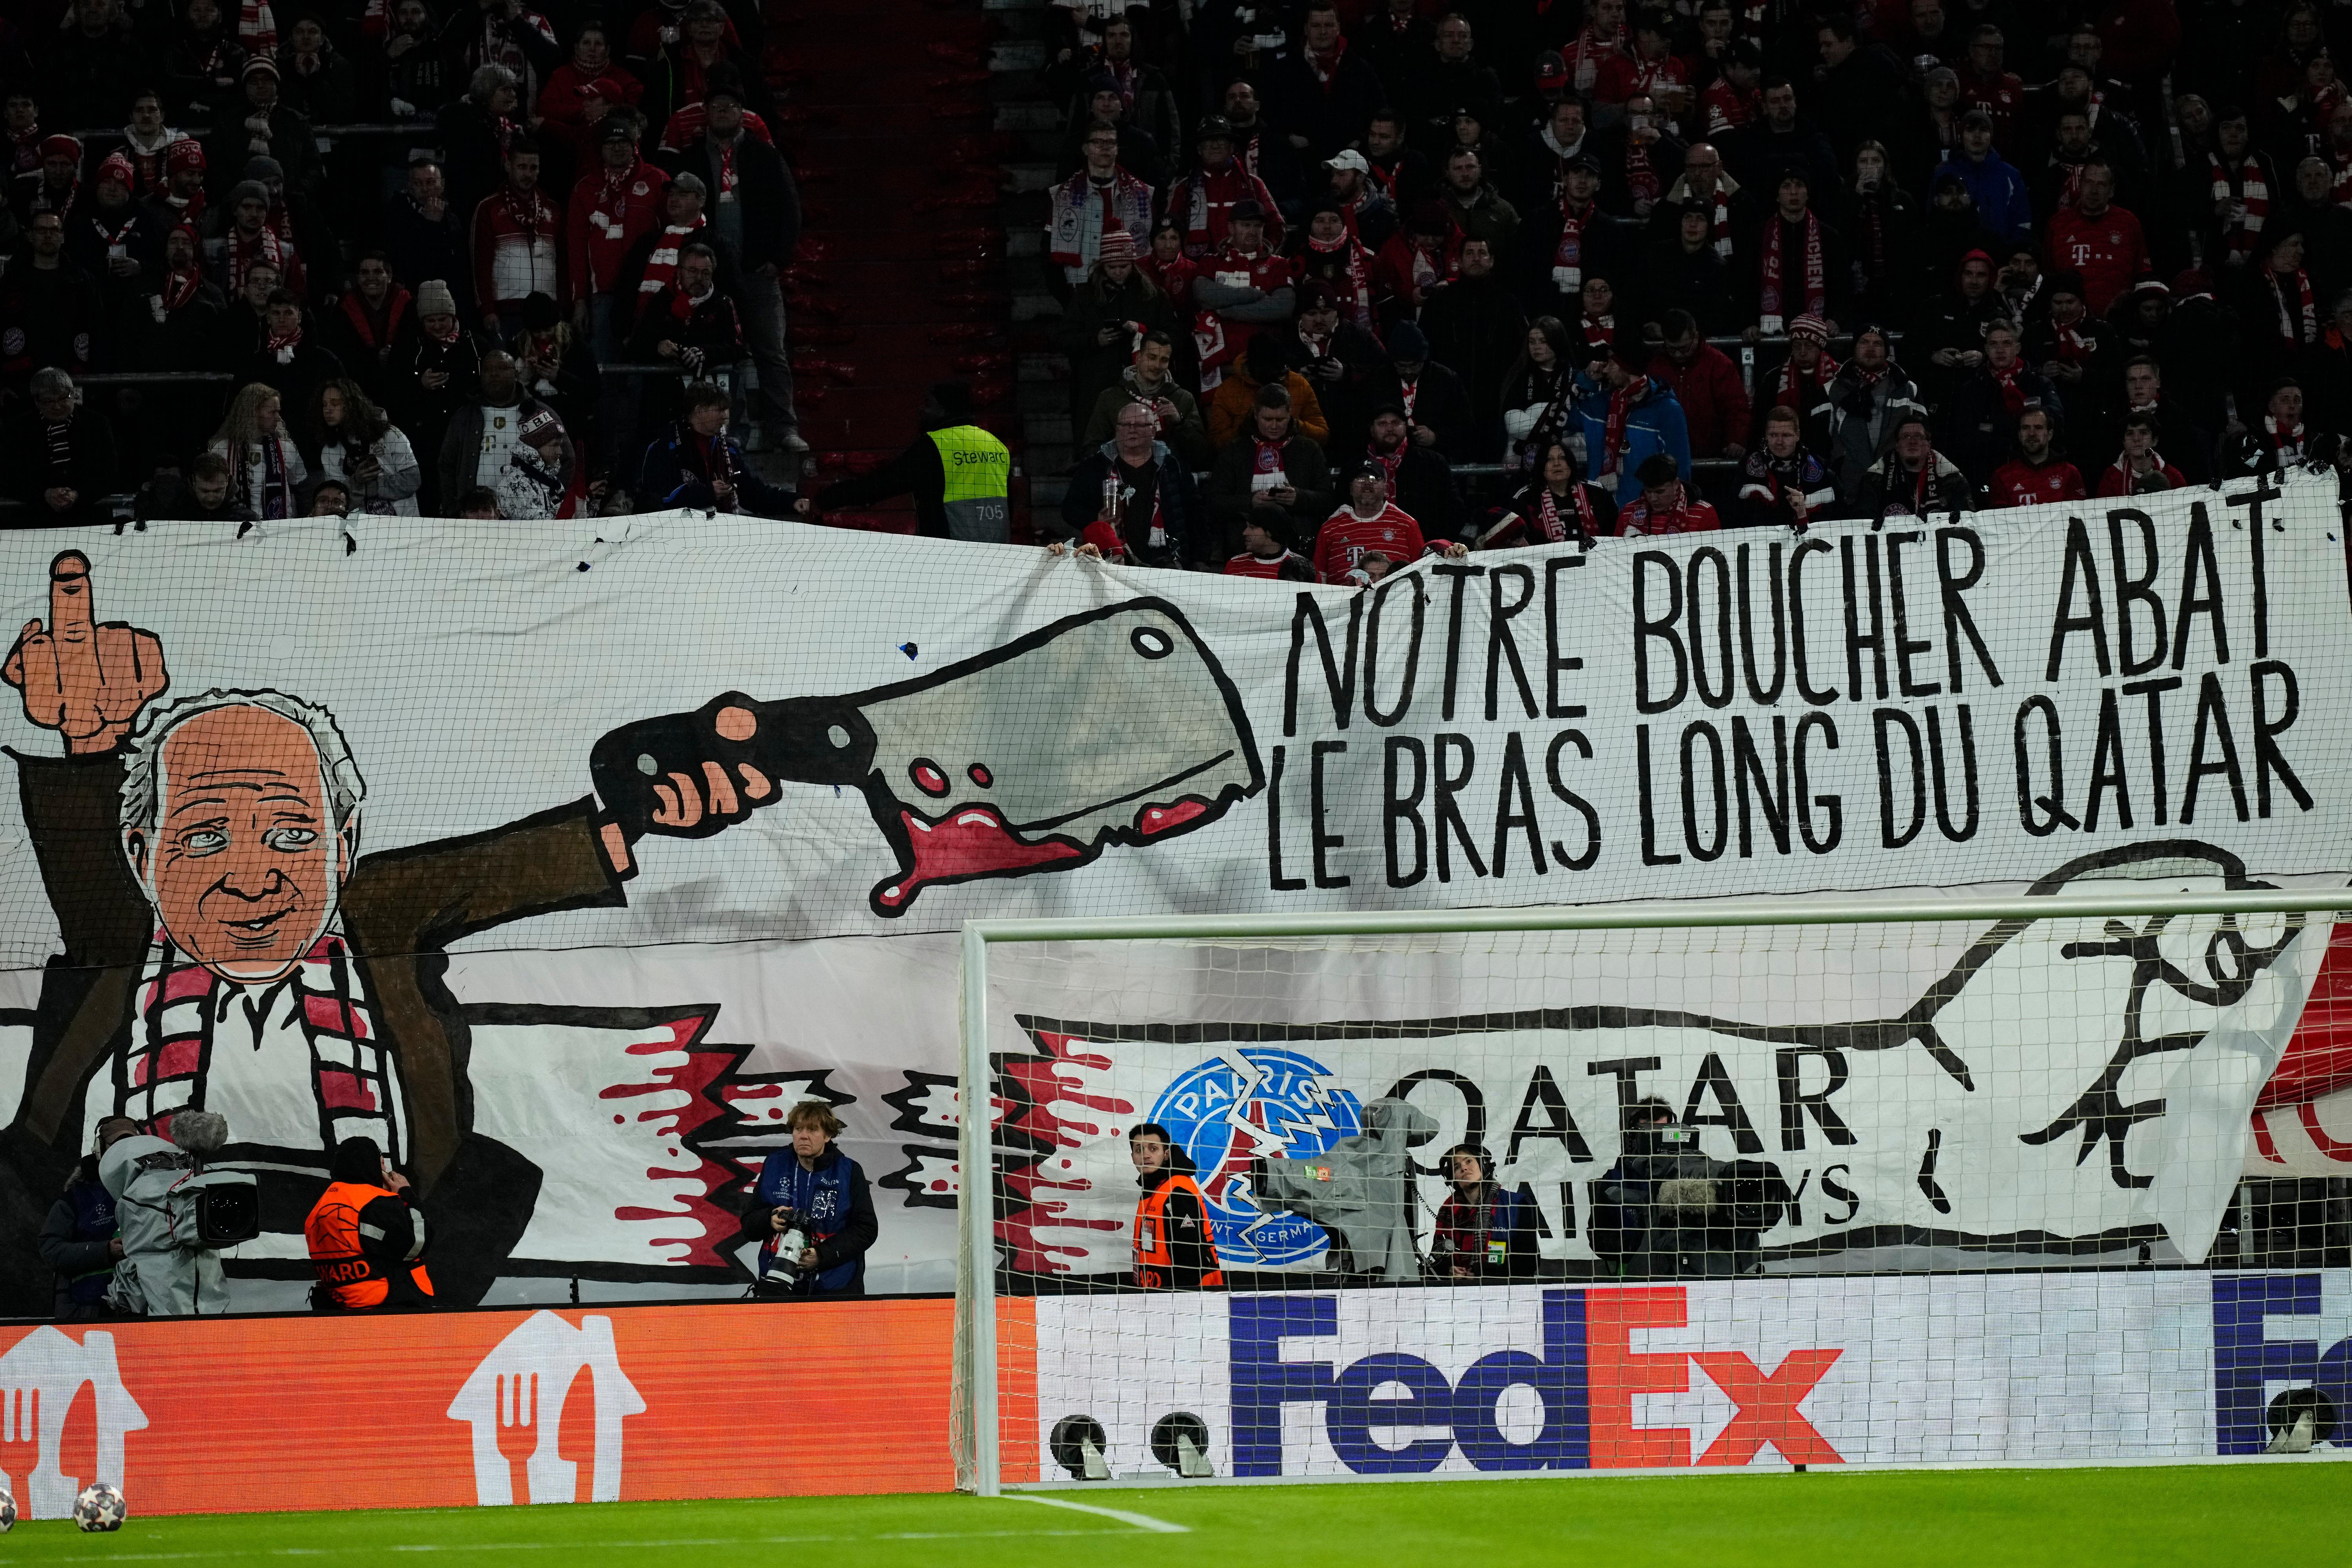 Hoeneß mit Fleischerbeil Bayern-Fans protestieren gegen Katar BR24